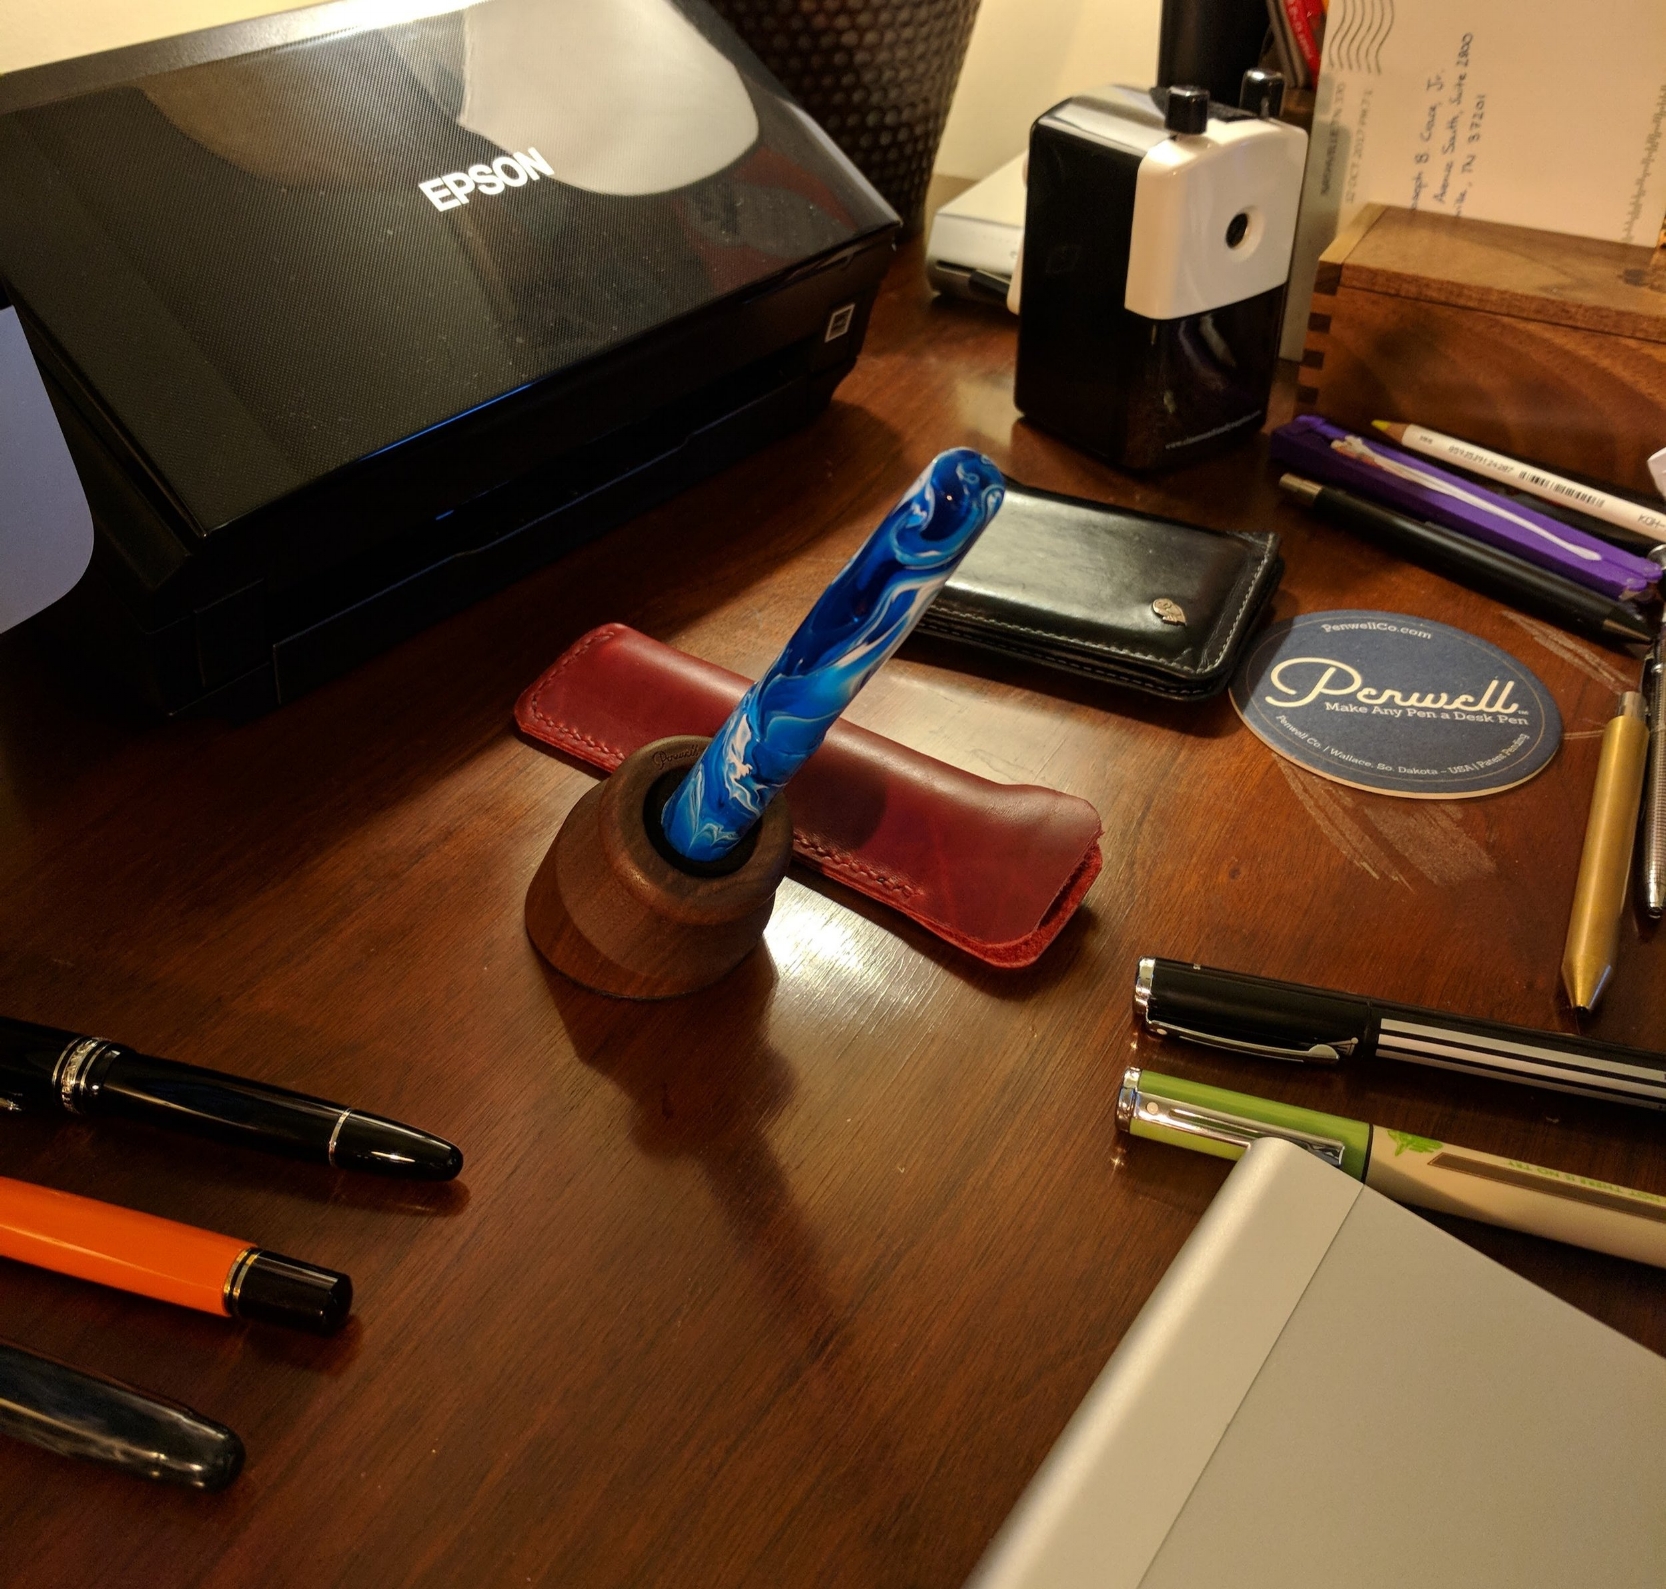 The Penwell Desktop Pen Holder The Gentleman Stationer